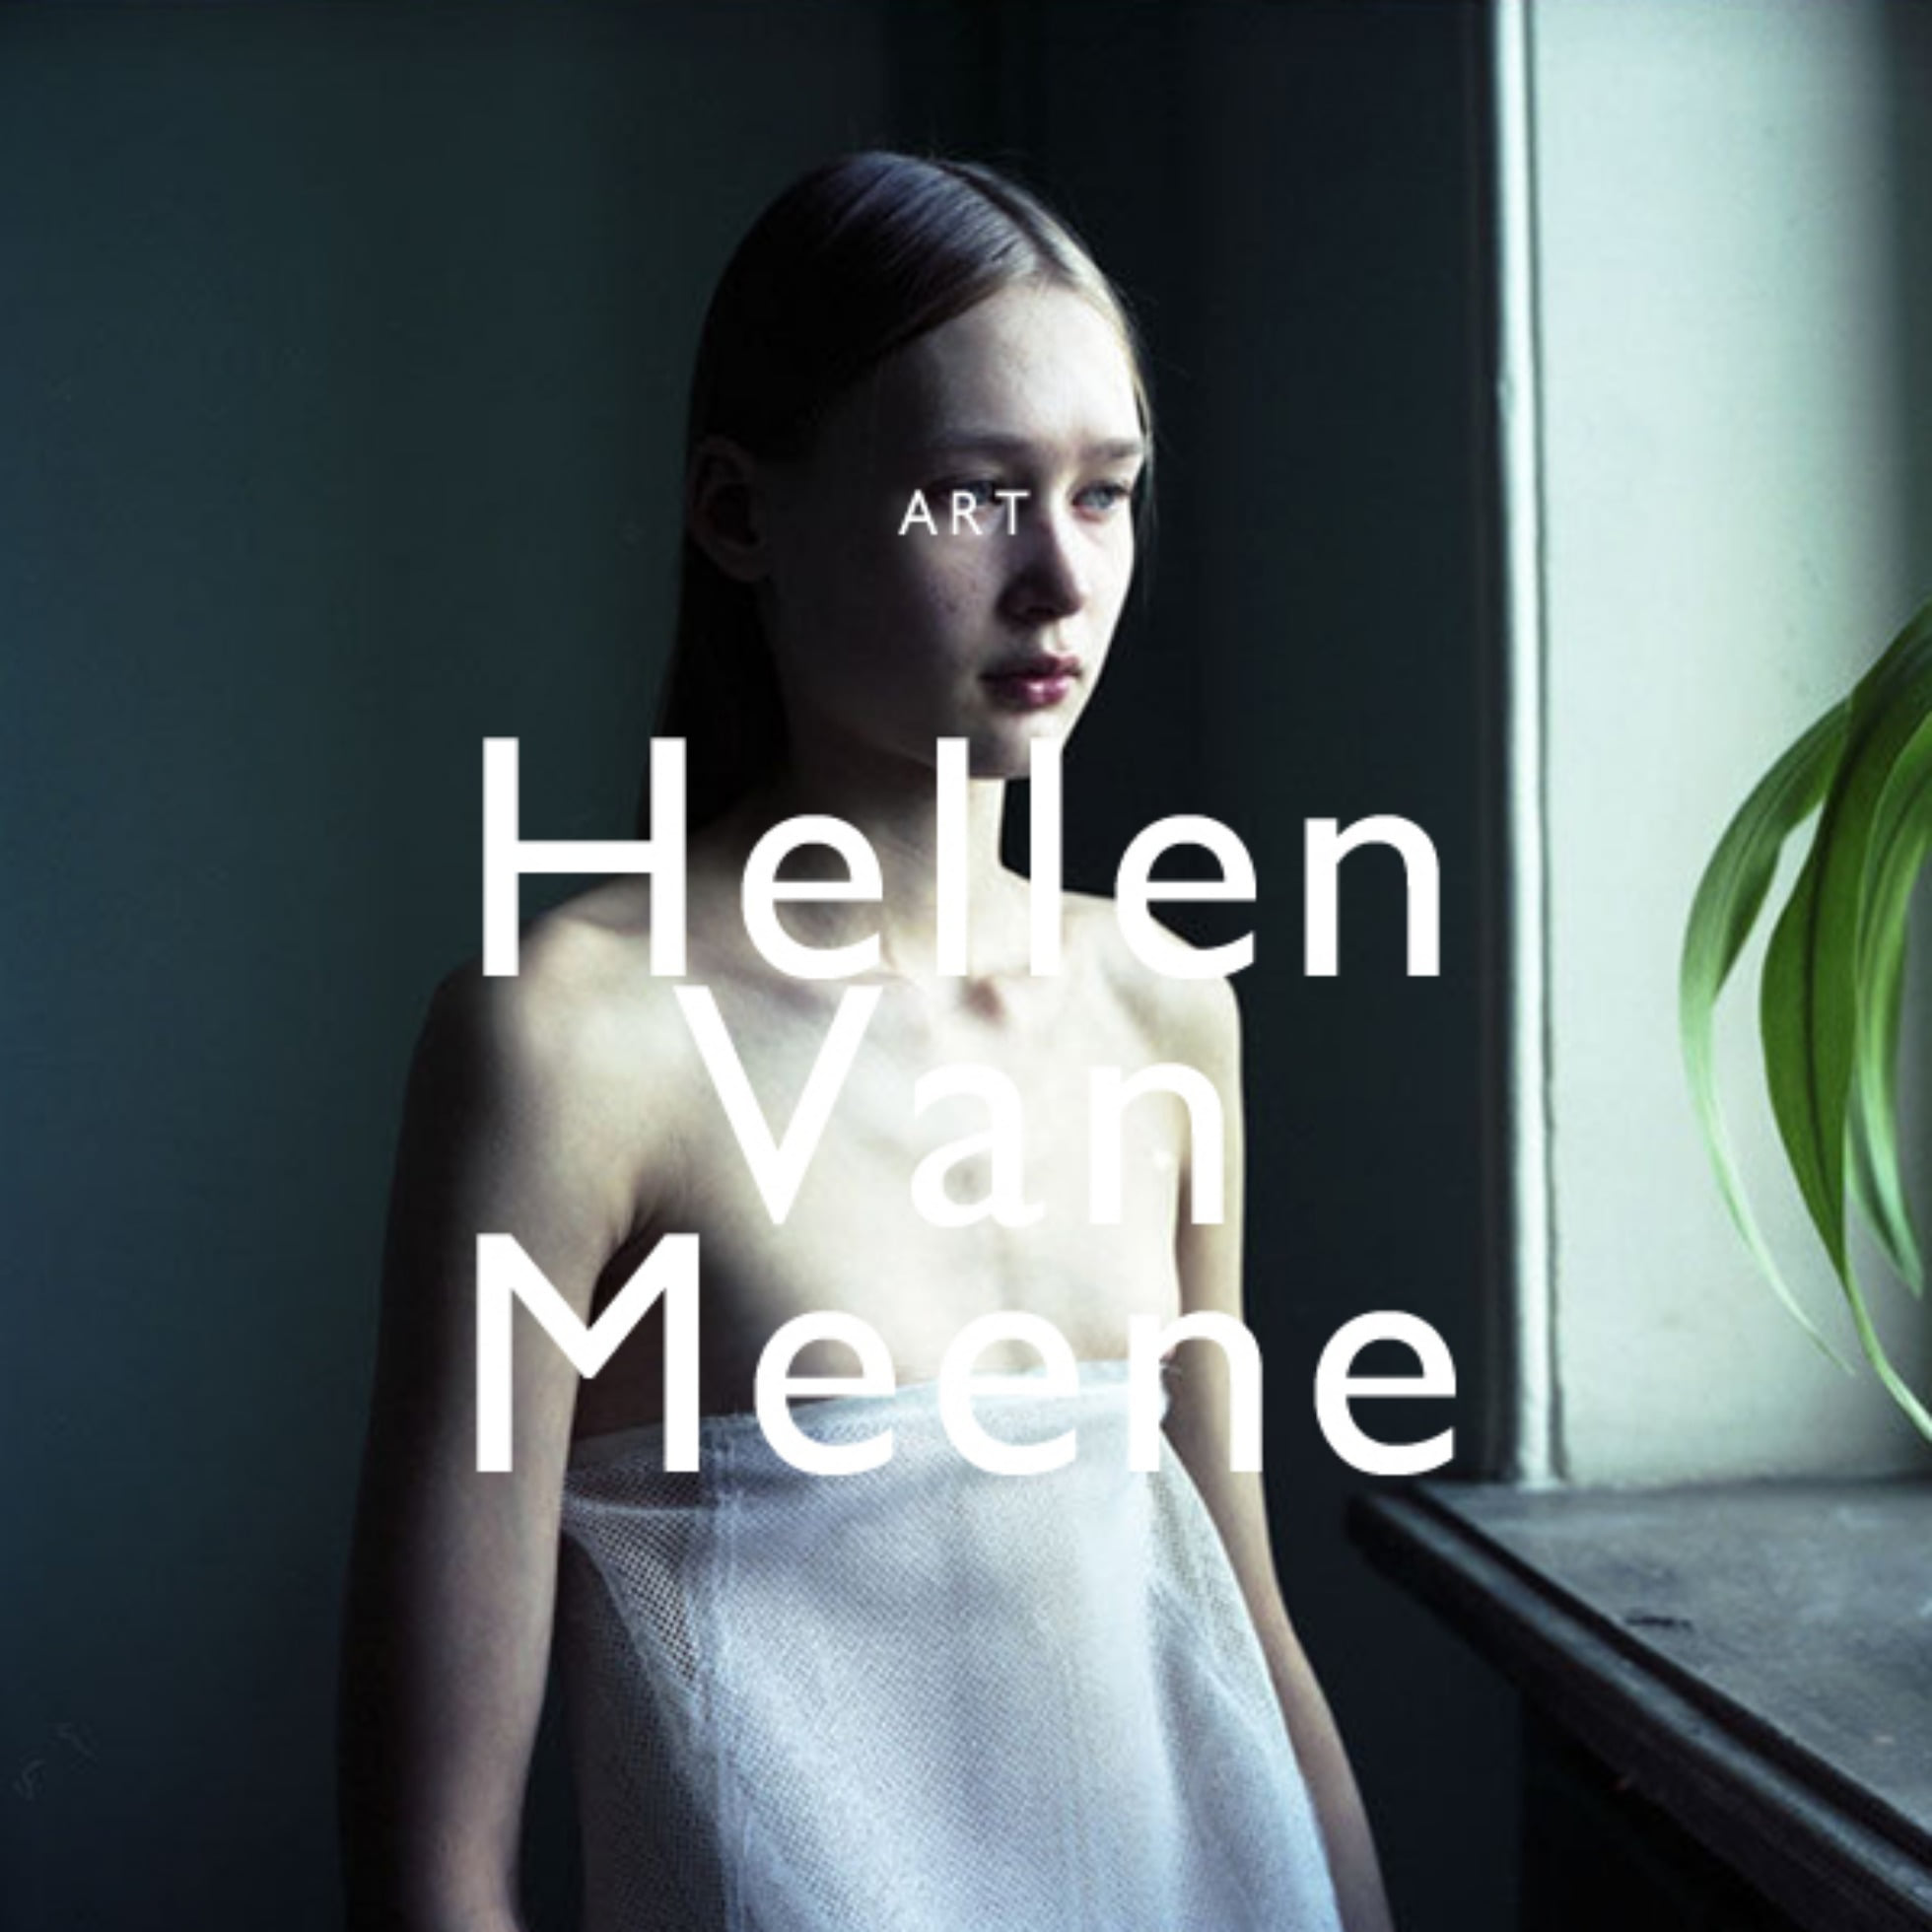 Hellen Van Meene